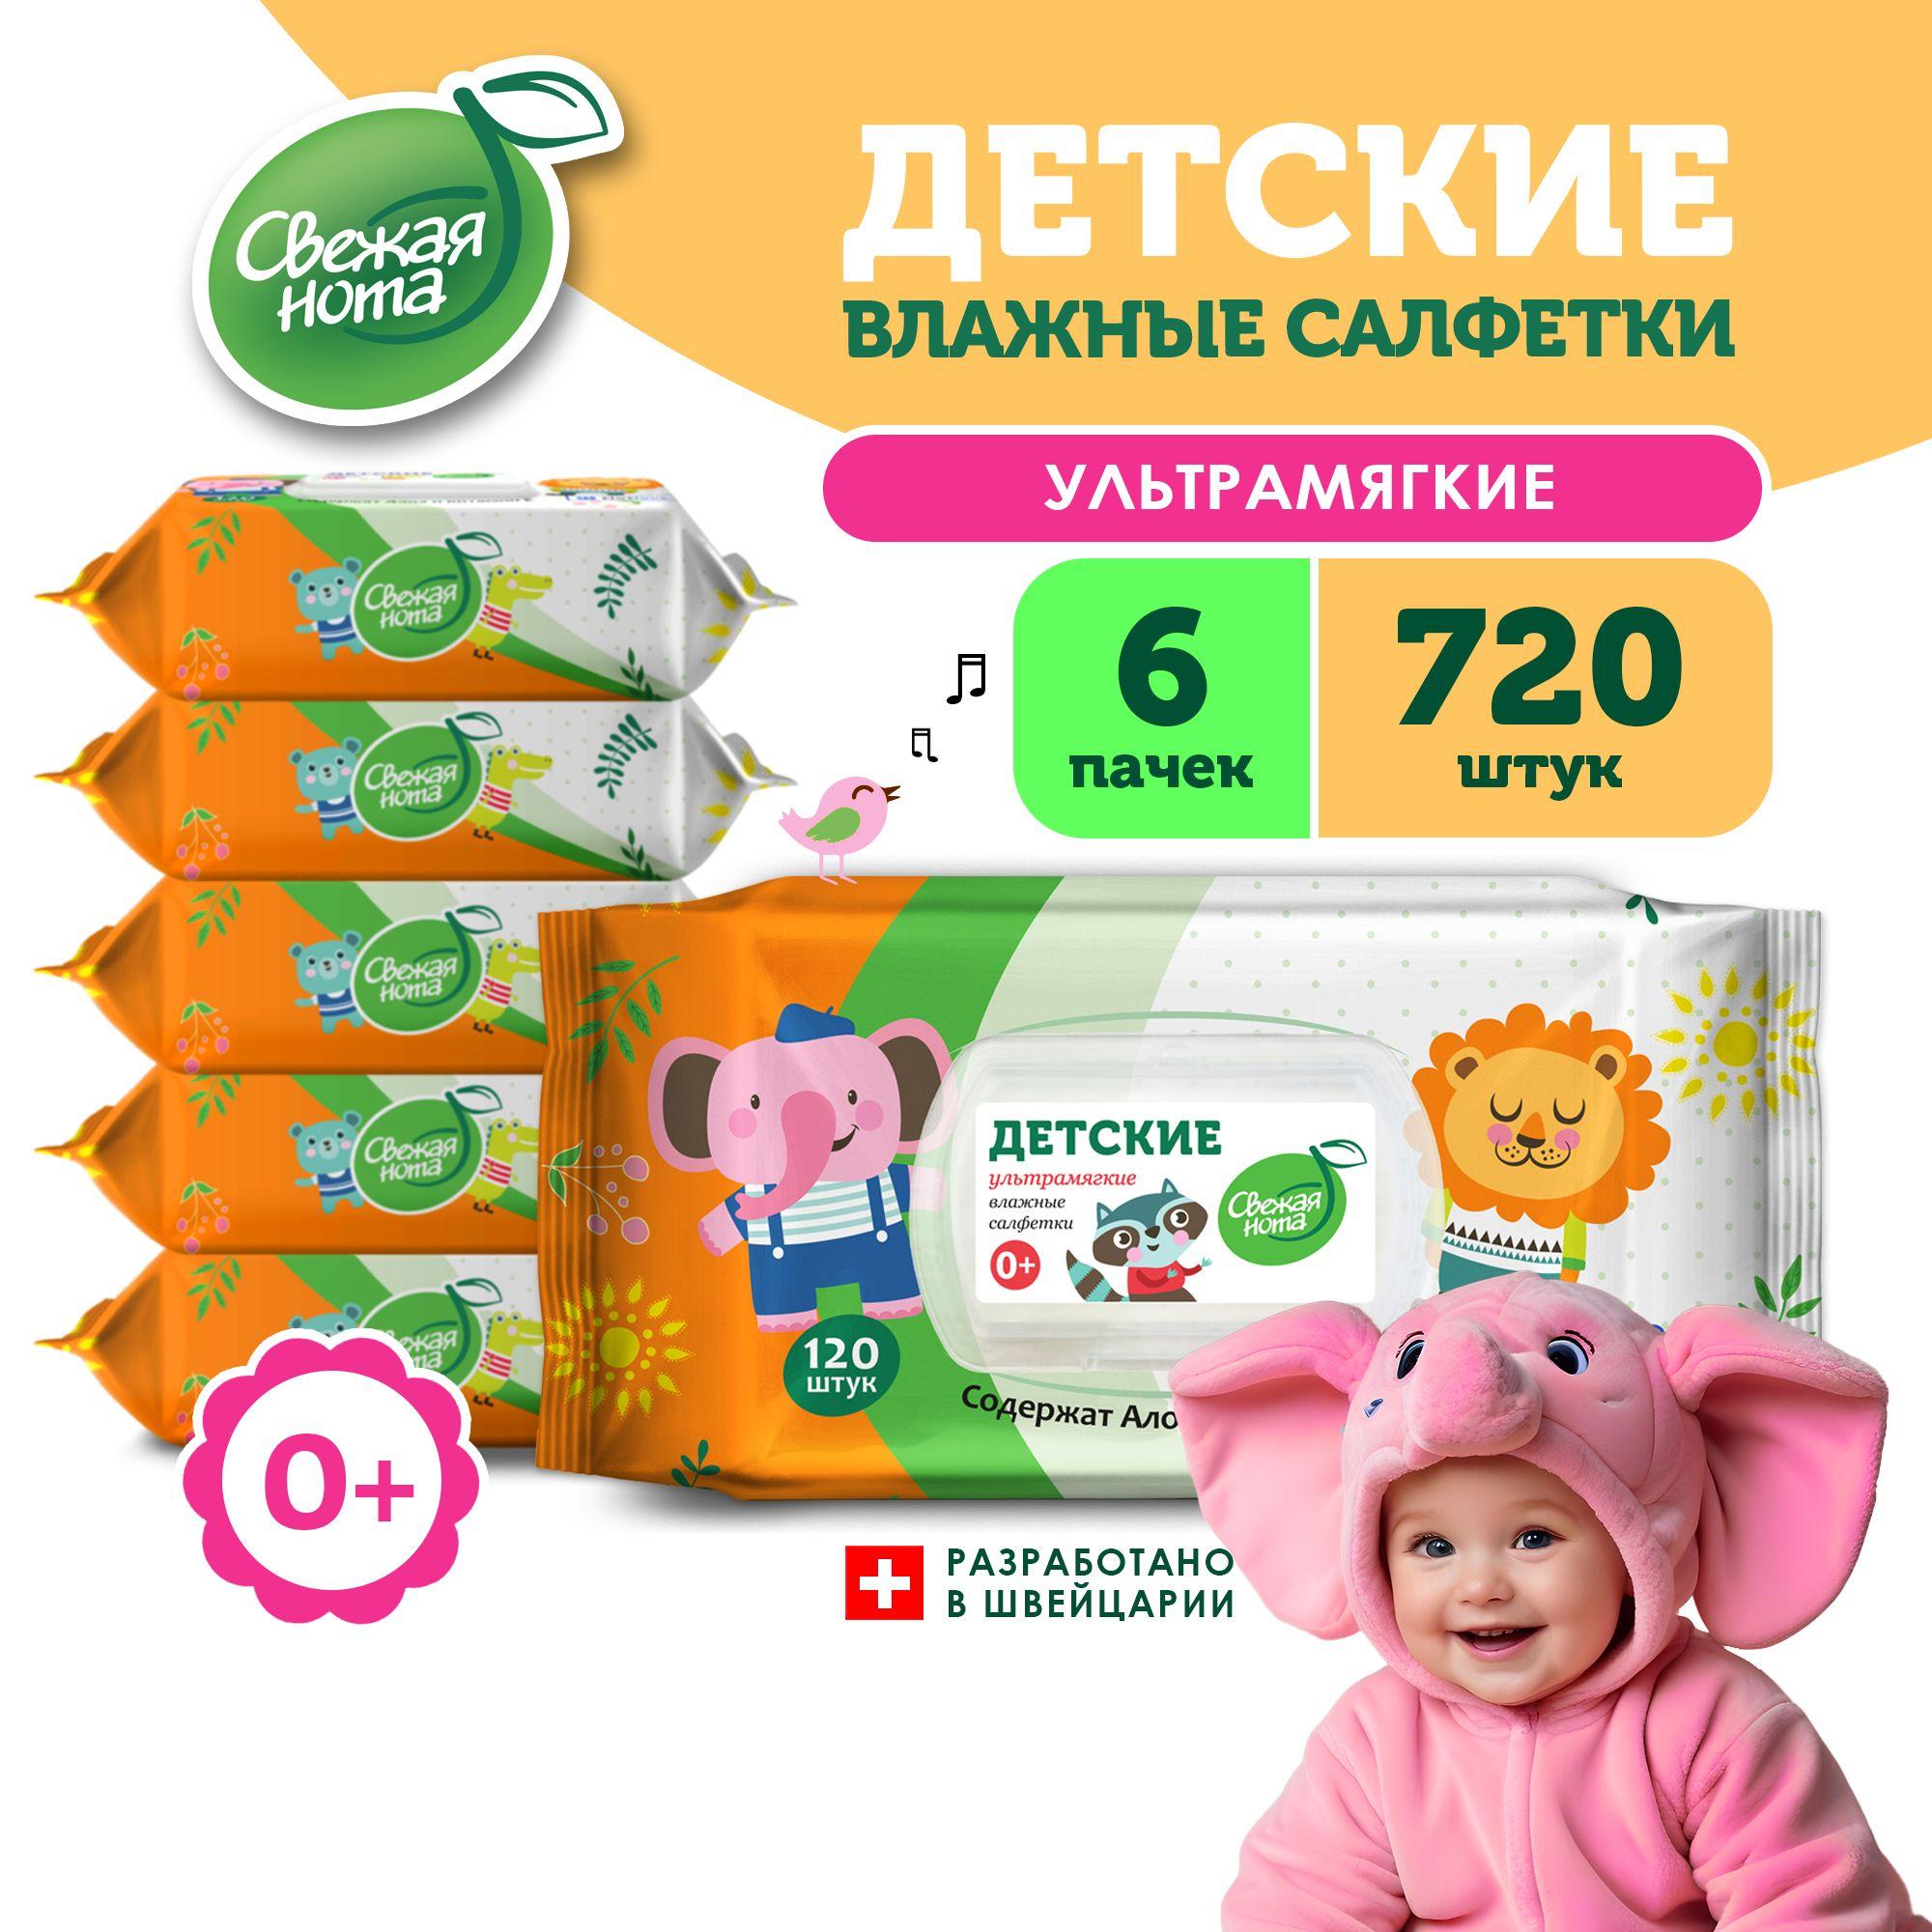 СВЕЖАЯ НОТА Влажные салфетки детские, для новорожденных, УЛЬТРАМЯГКИЕ, с экстрактом Алоэ и Витамином E, с клапаном, 720 шт. (120 шт. x 6 упаковок)